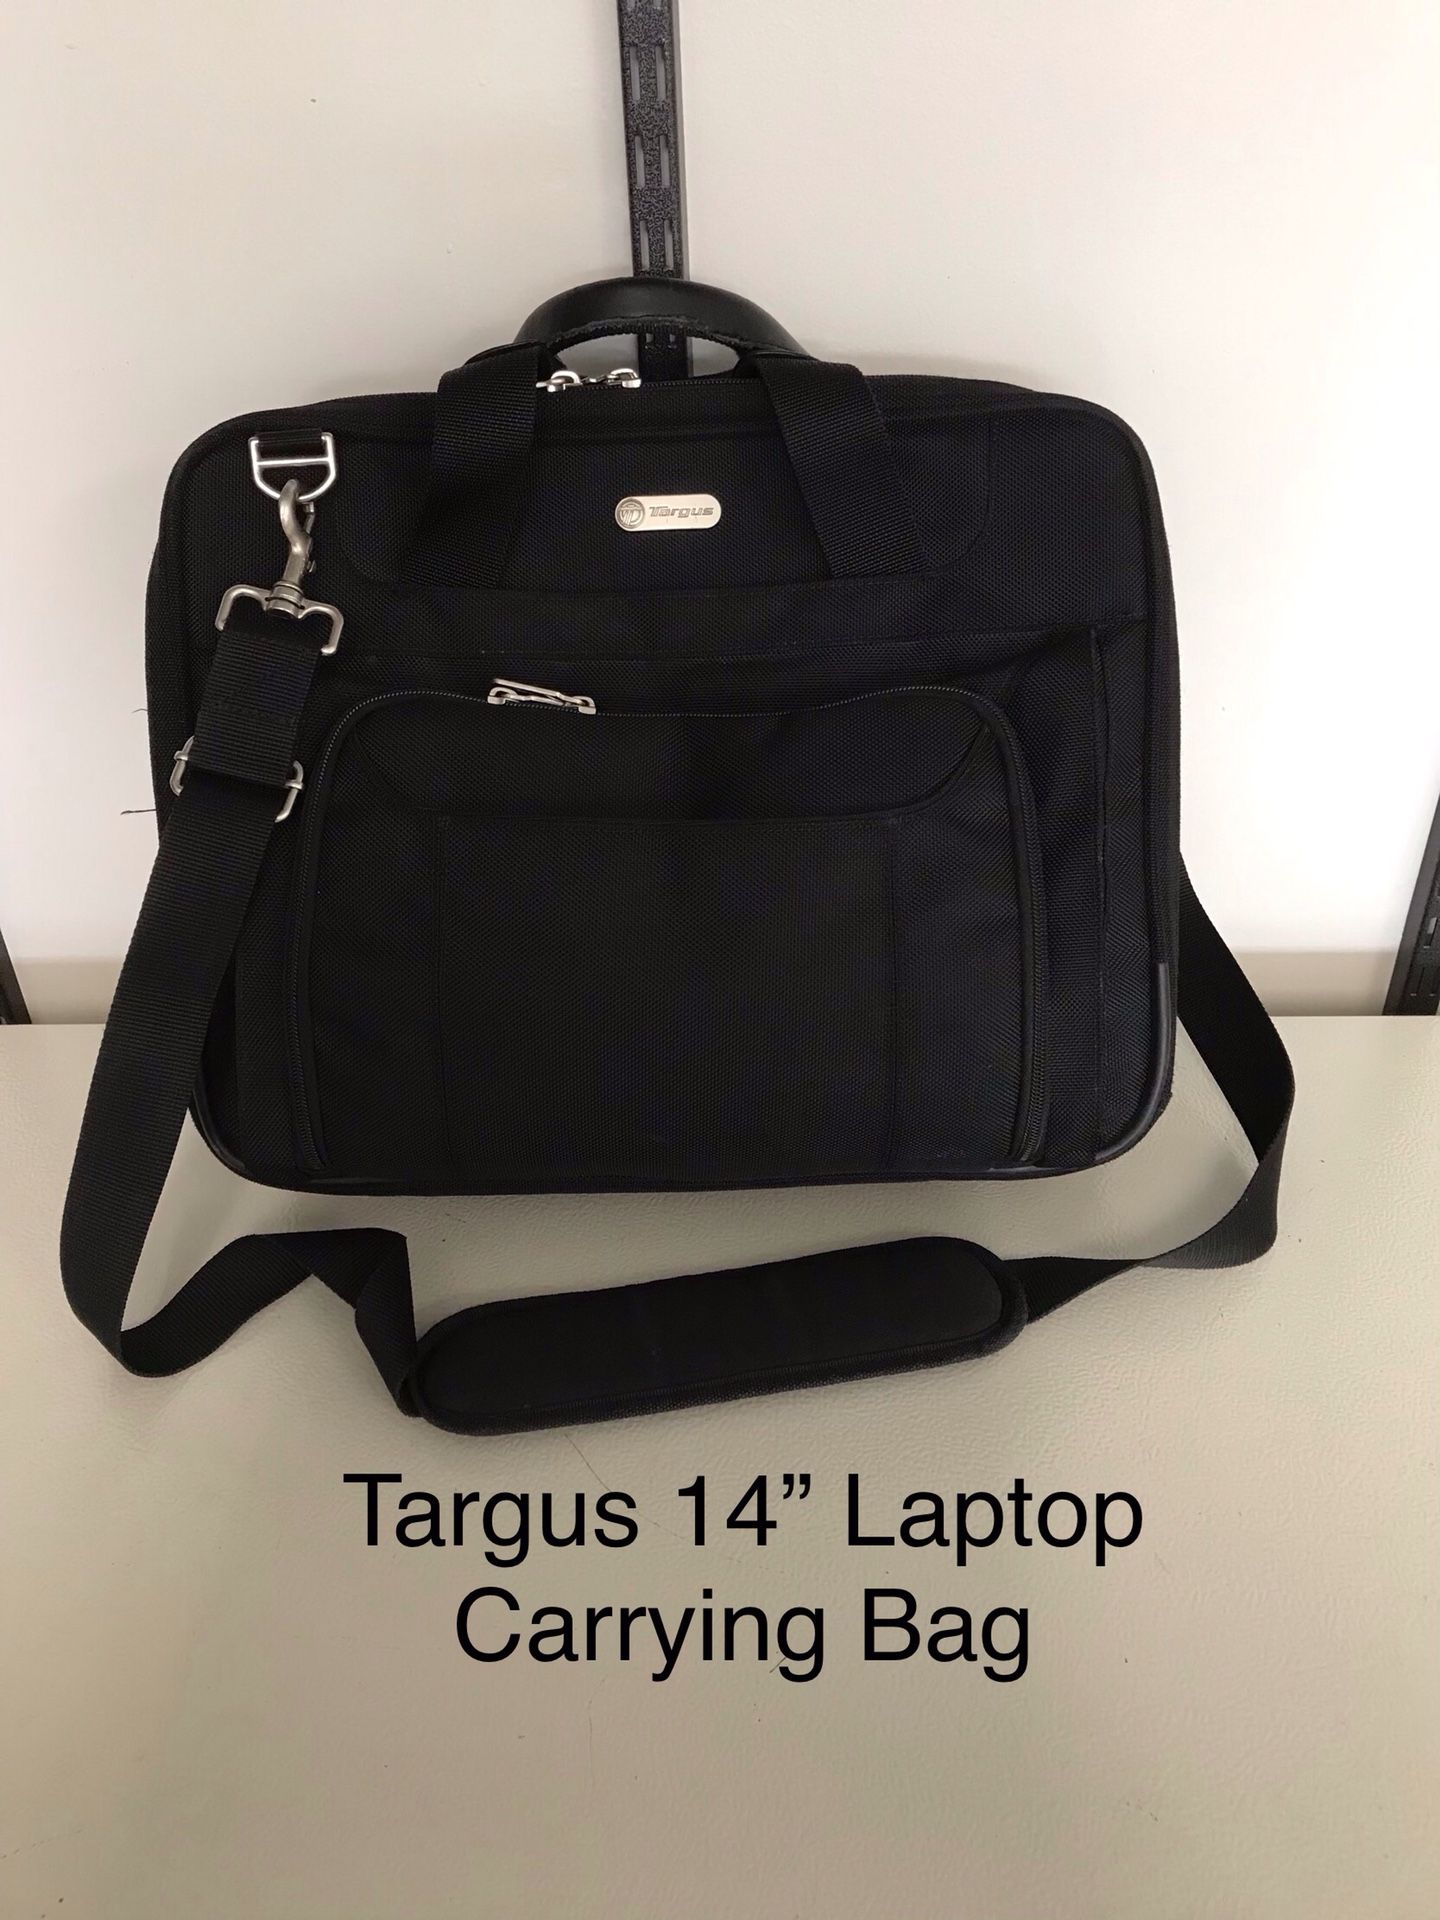 Targus 14” laptop carrying bag